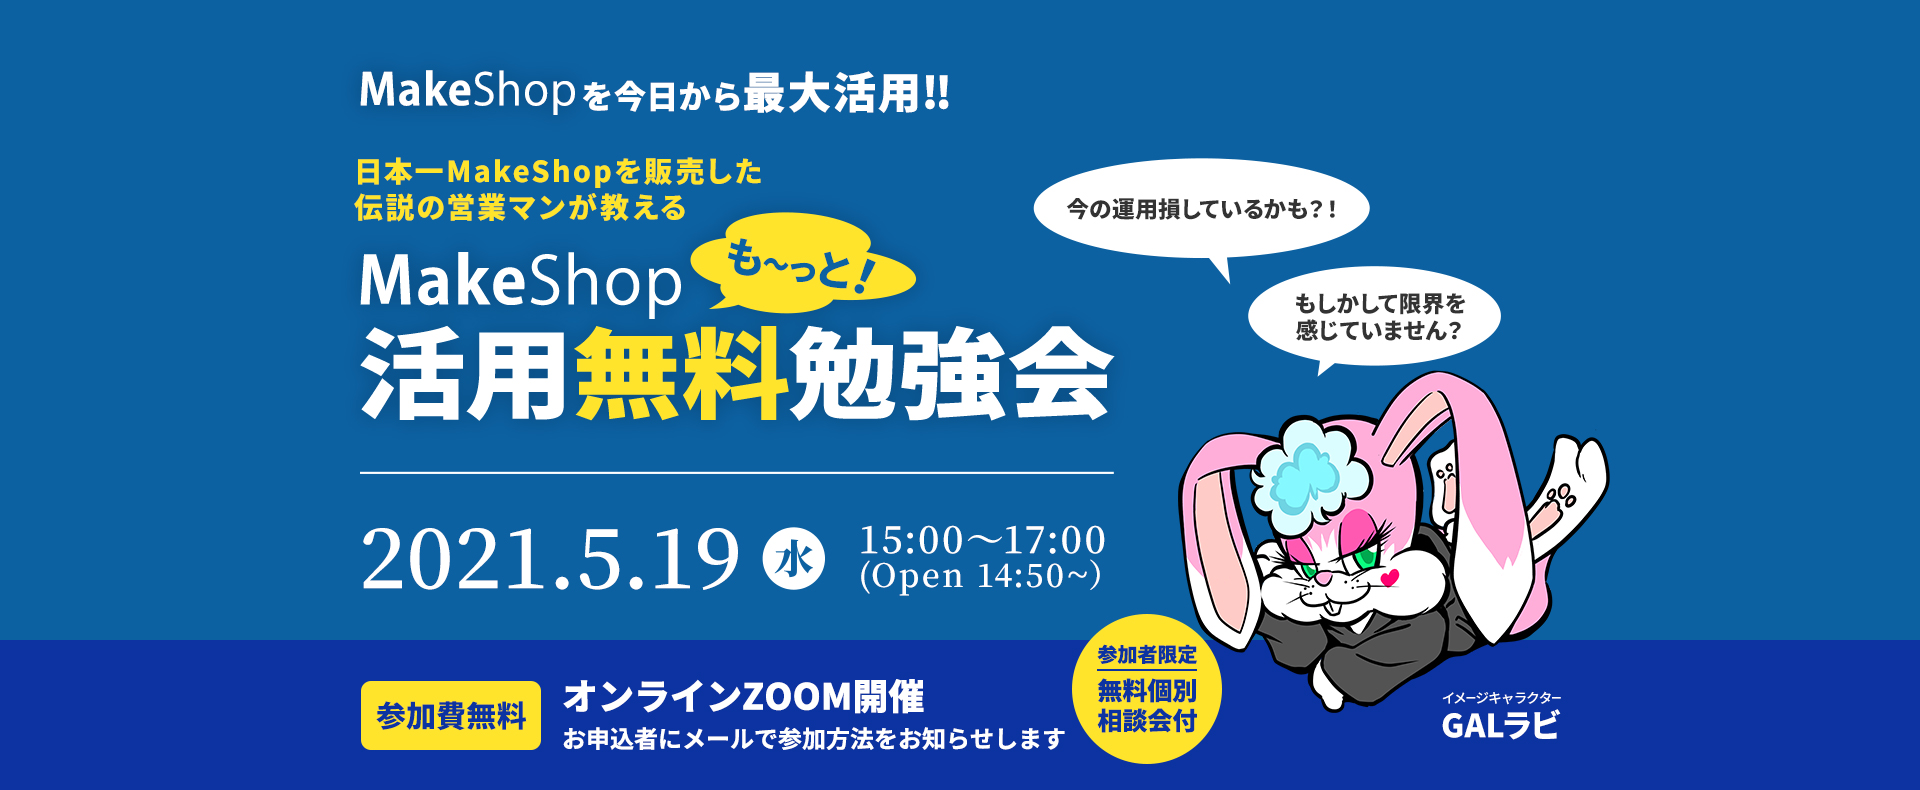 MakeShopを今日から最大活用‼ 日本一MakeShopを販売した伝説の営業マンが教える MakeShop活用無料勉強会 2021.5.19(水) 15:00〜17:00 (Open 14:50~）参加費無料 オンラインZOOM開催 お申込者にメールで参加方法をお知らせします